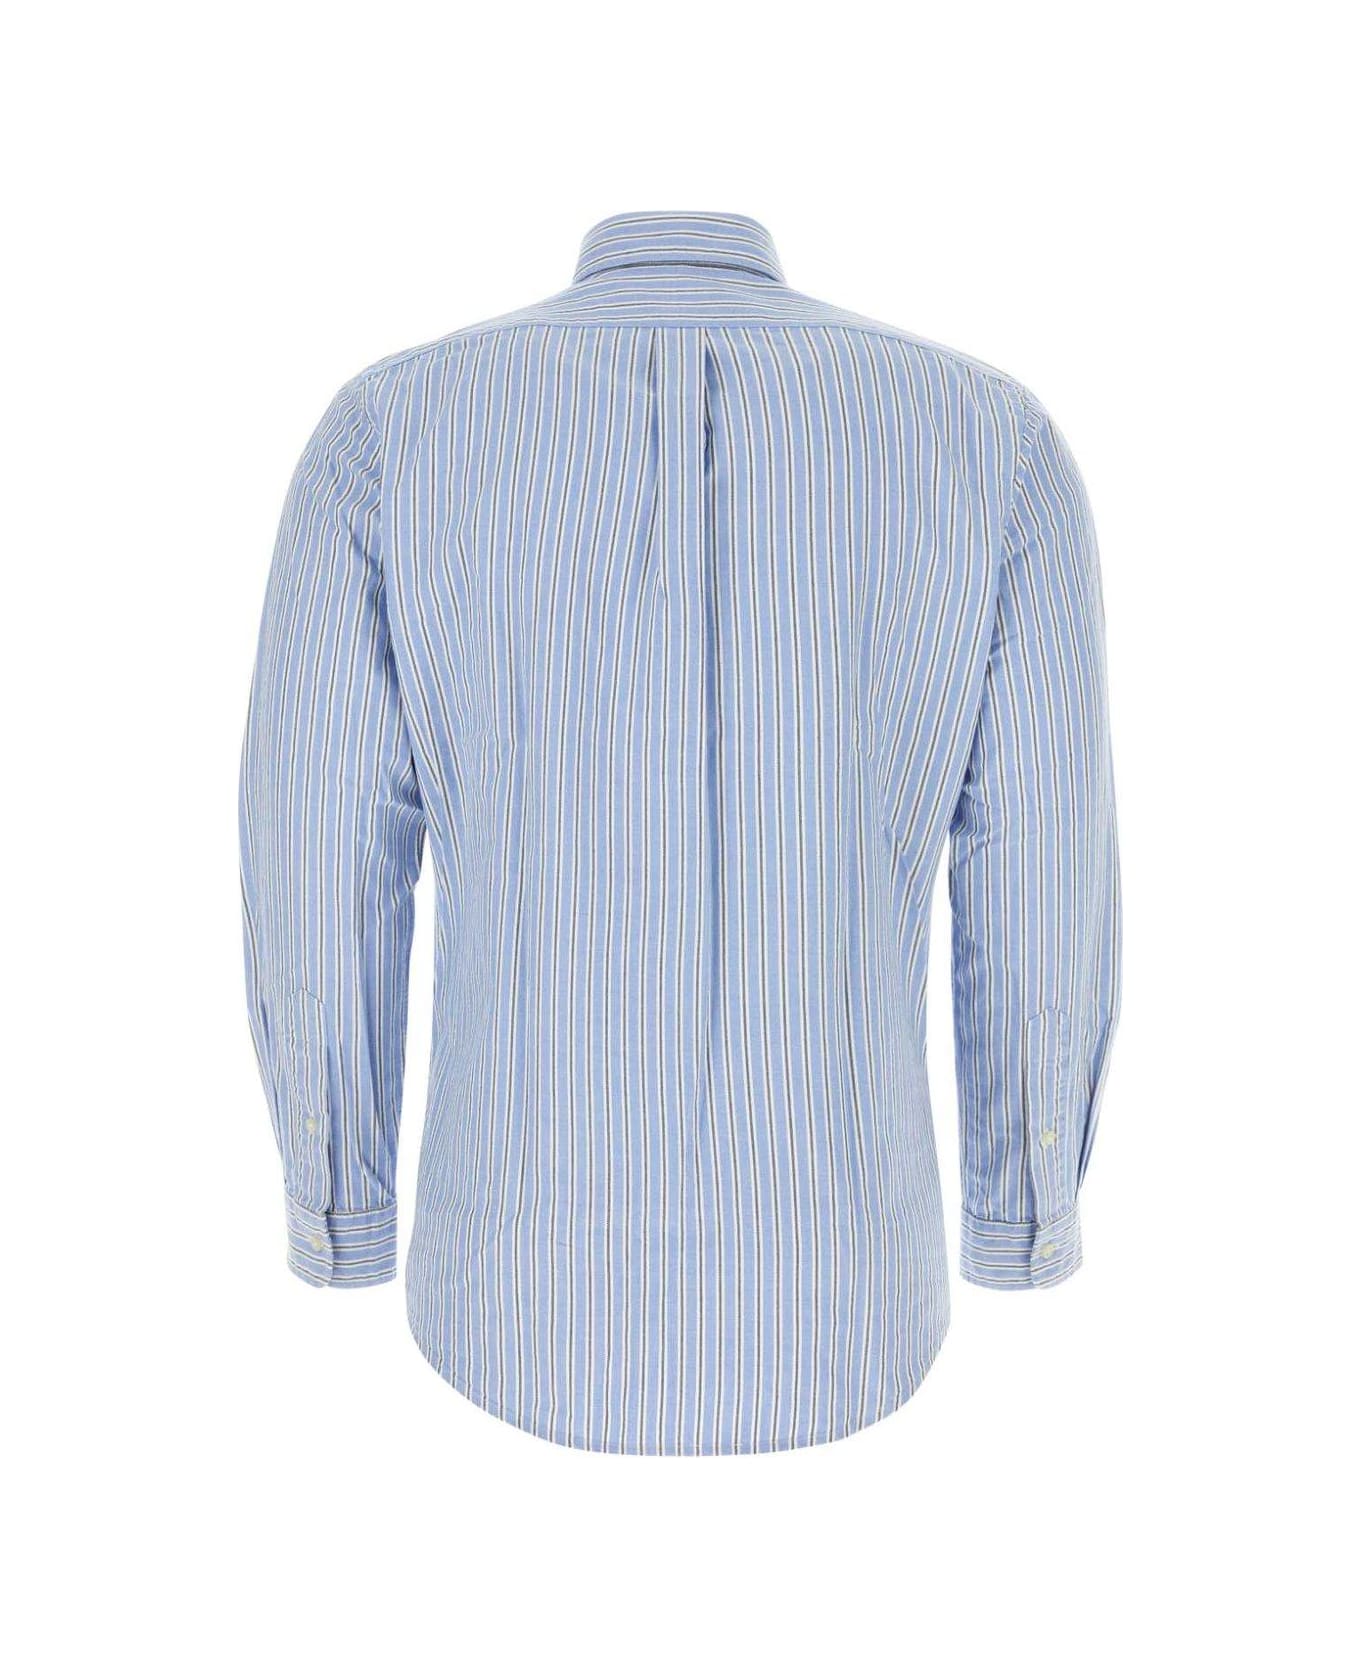 Polo Ralph Lauren Striped Oxford Shirt Polo Ralph Lauren - LIGHTBLUE